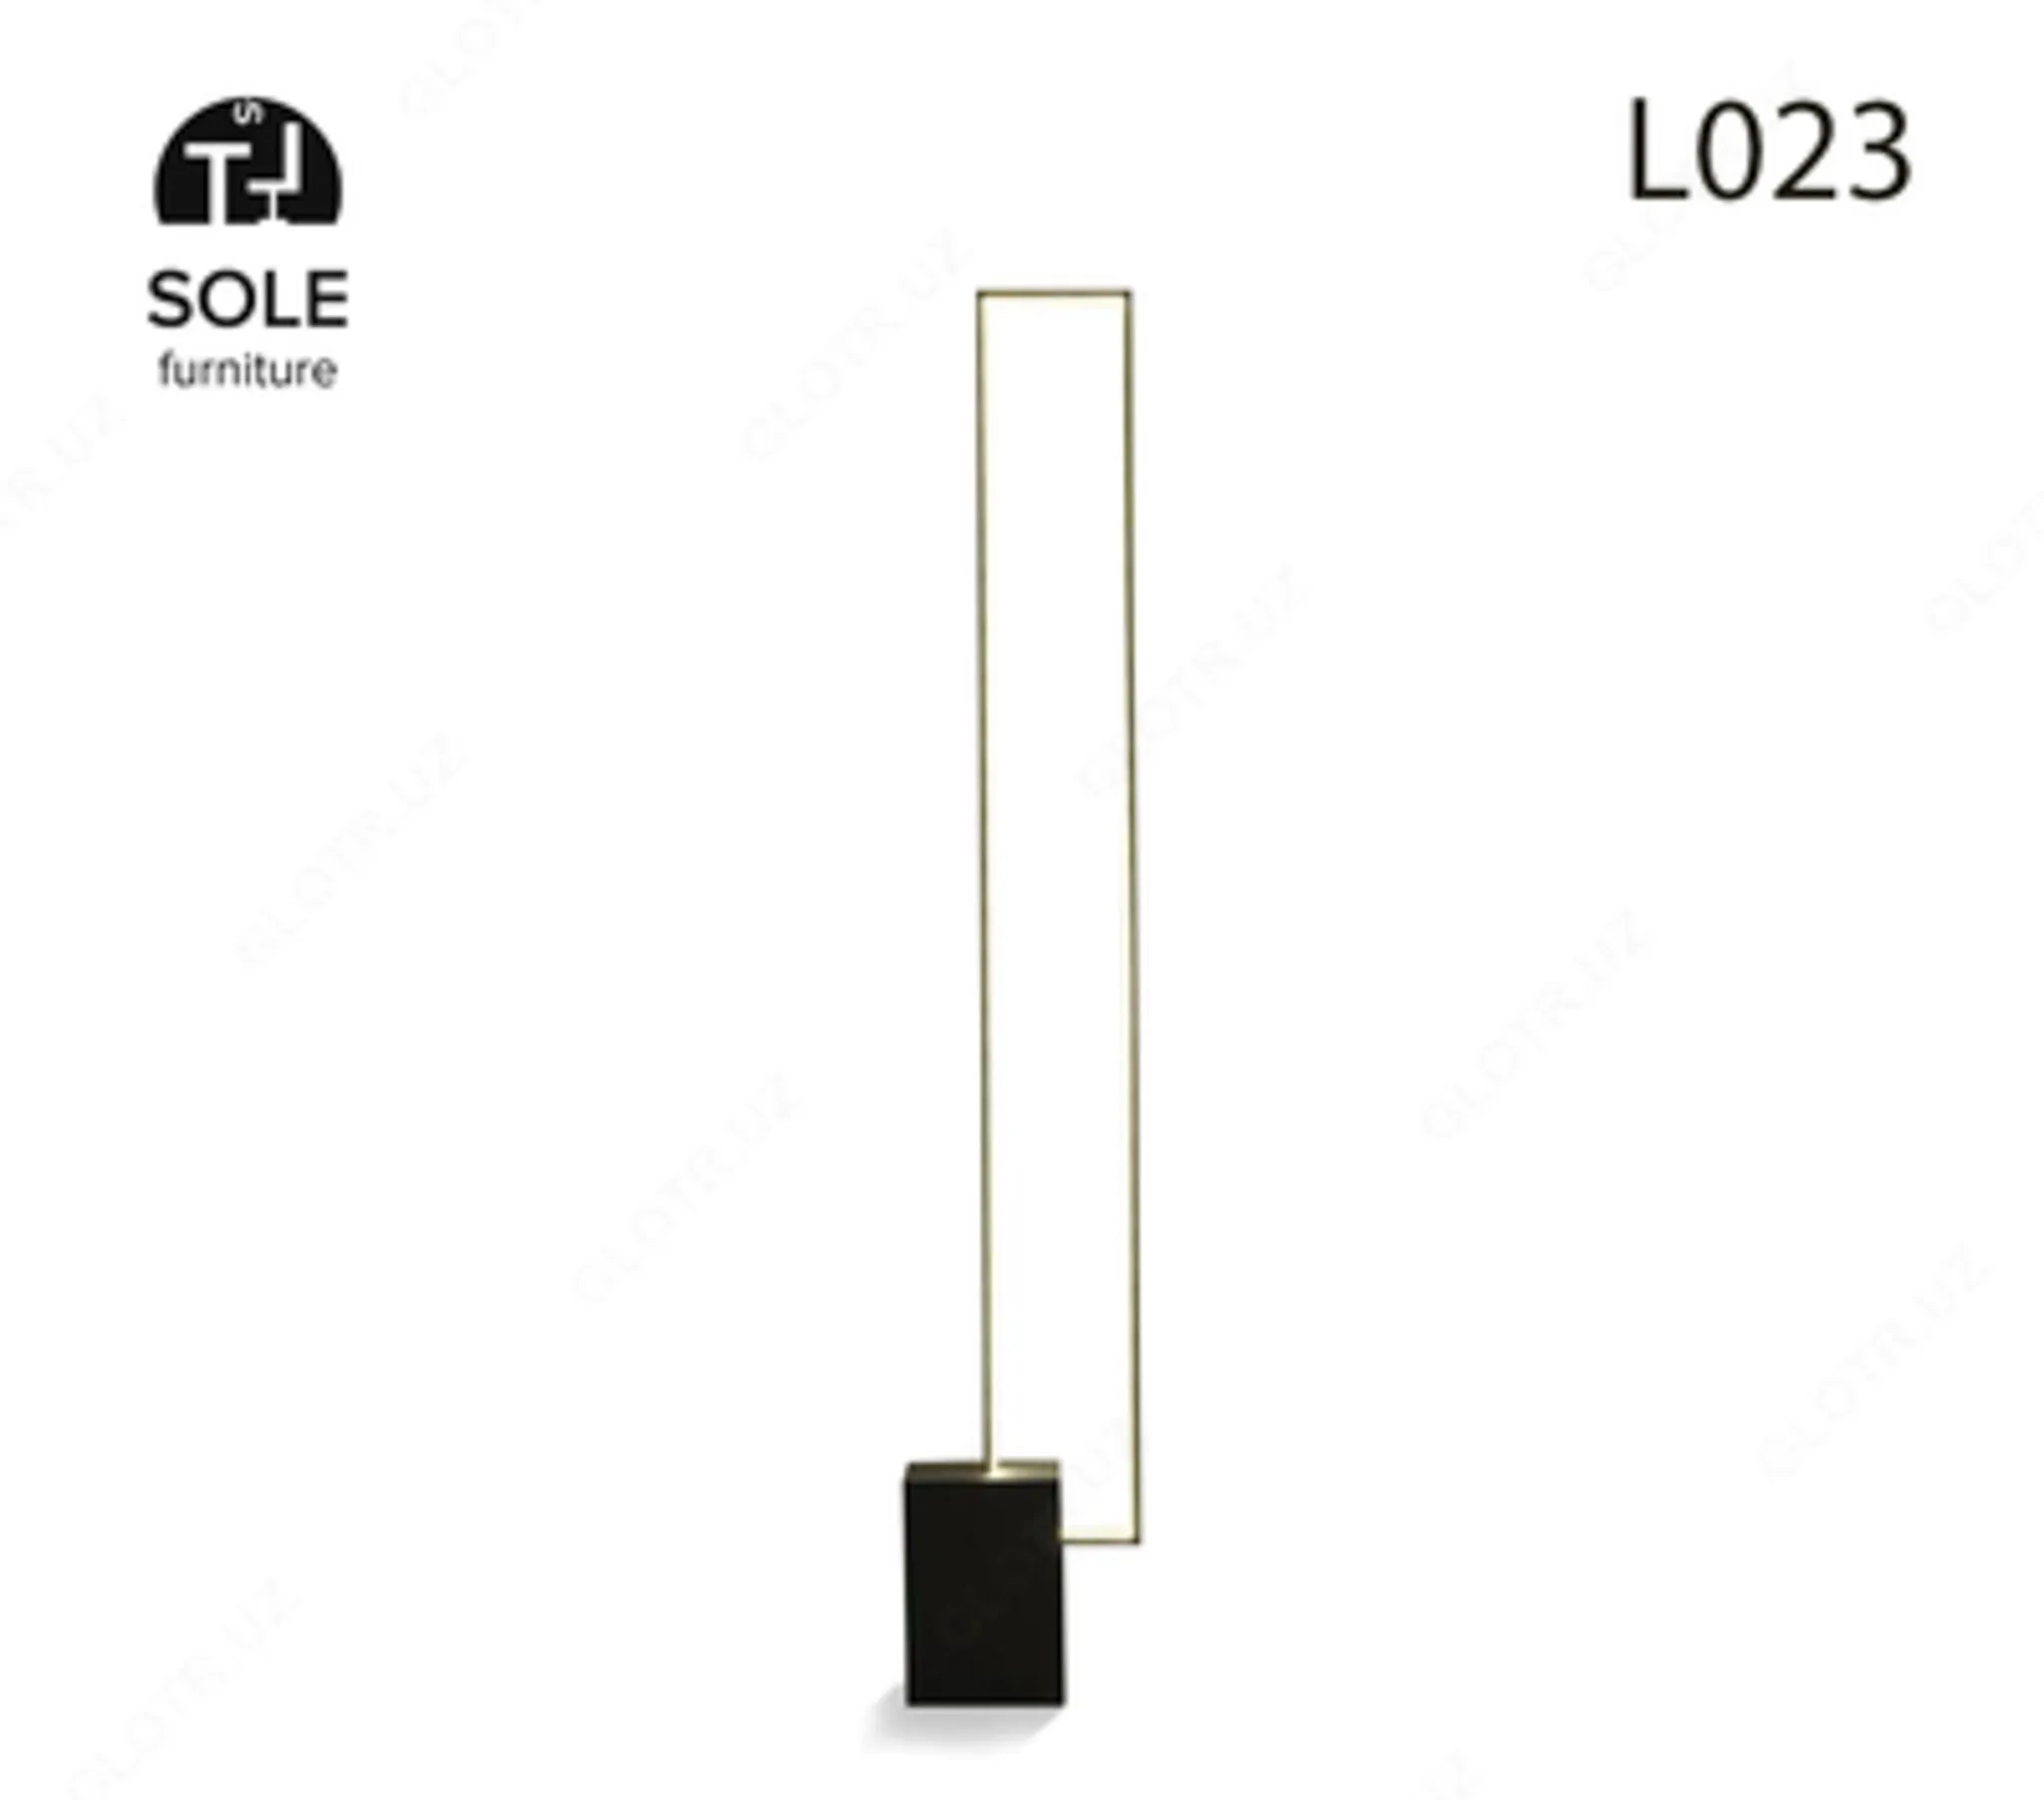 Chiroq - pol lampasi, "L023" modeli#1